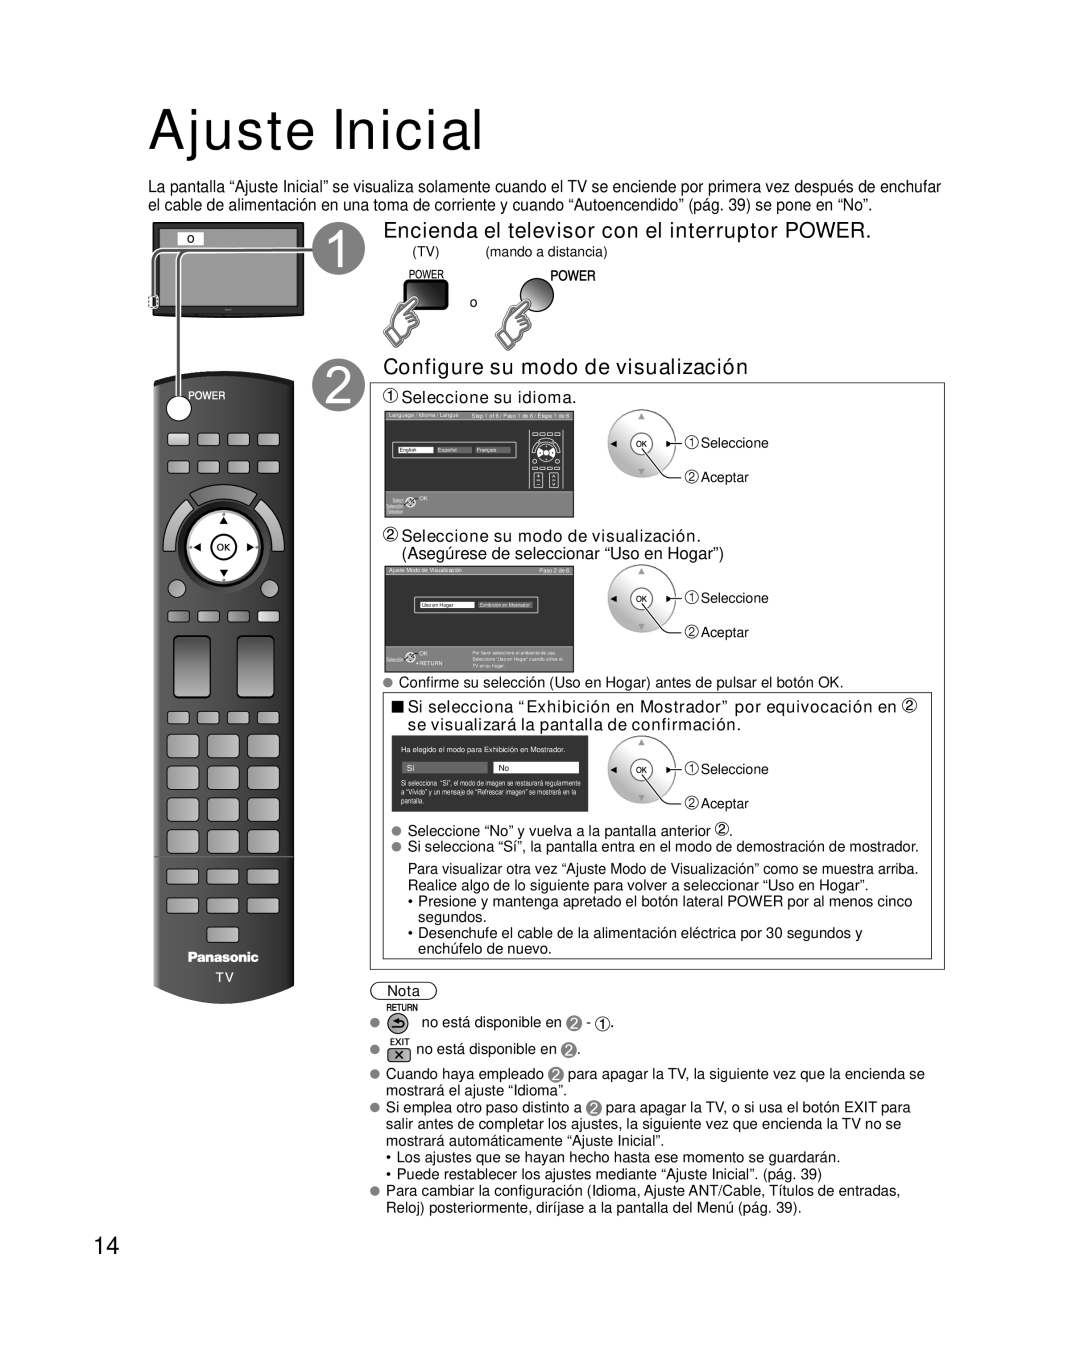 Panasonic TQB2AA0595 Ajuste Inicial, Encienda el televisor con el interruptor POWER, Configure su modo de visualización 